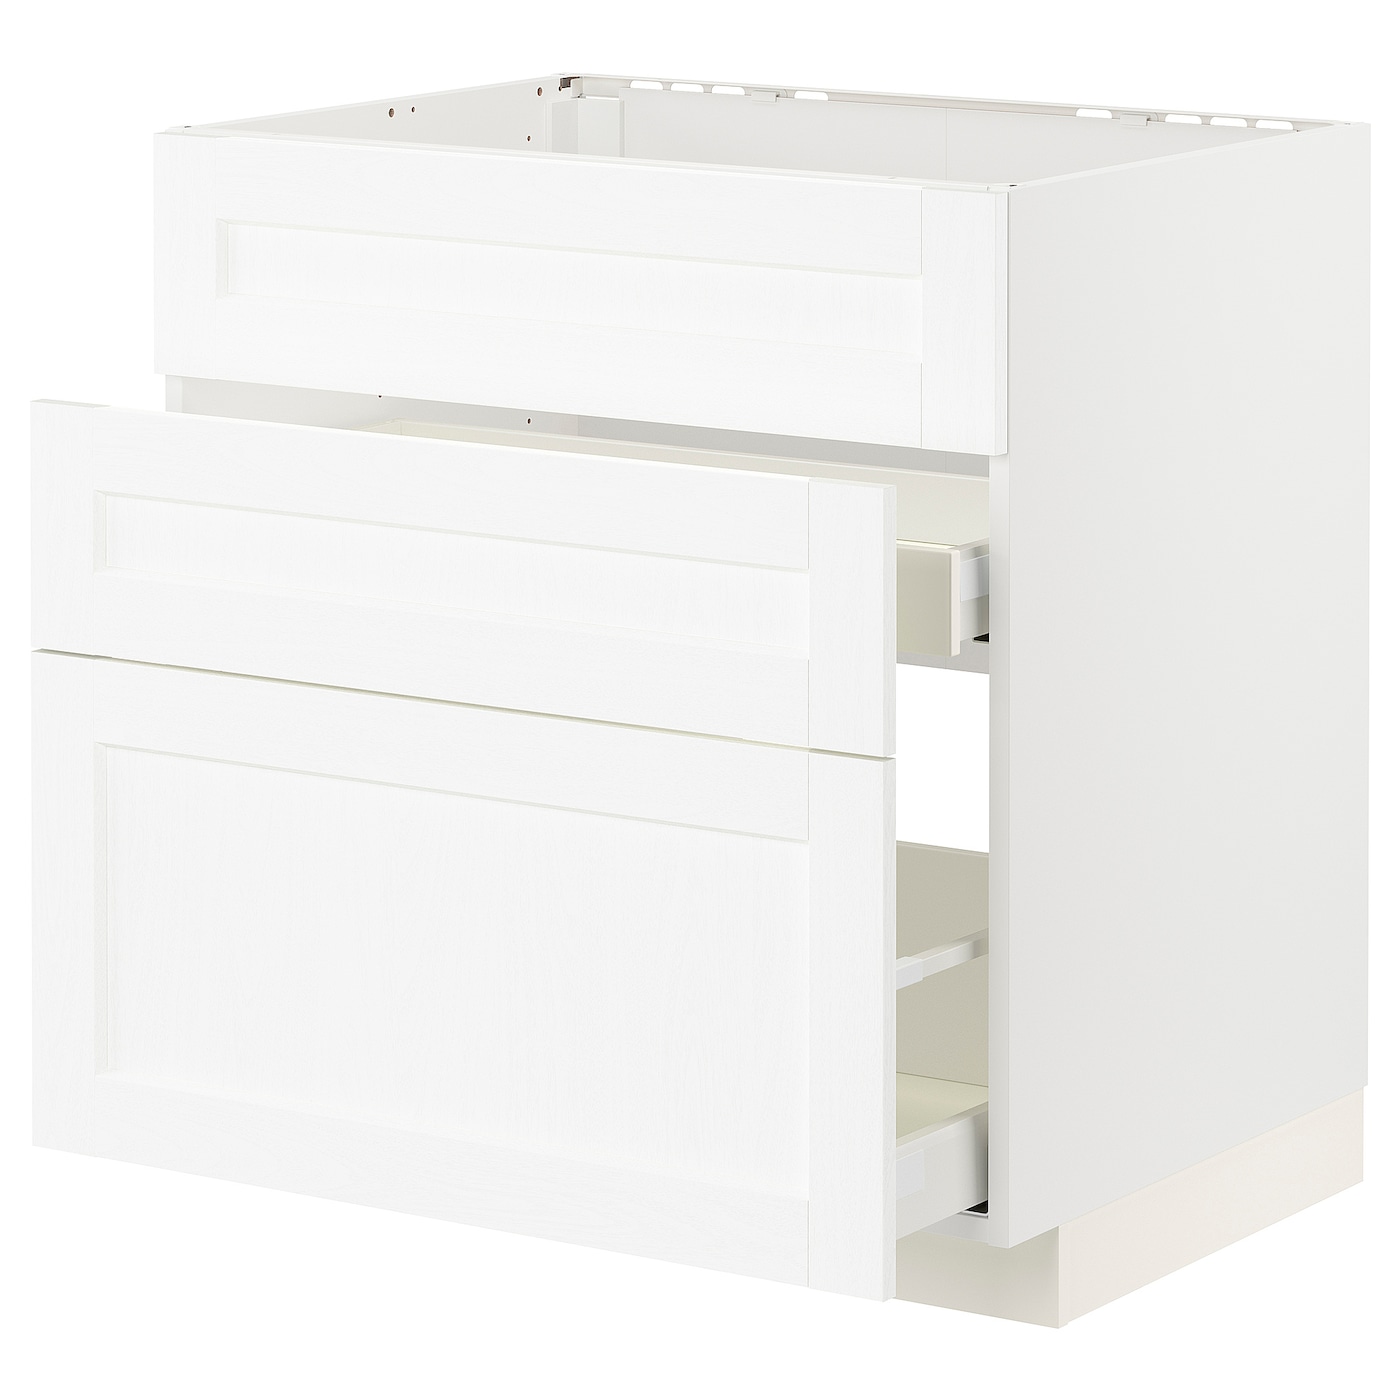 Напольный кухонный шкаф  - IKEA METOD MAXIMERA, 88x61,9x80см, белый, МЕТОД МАКСИМЕРА ИКЕА